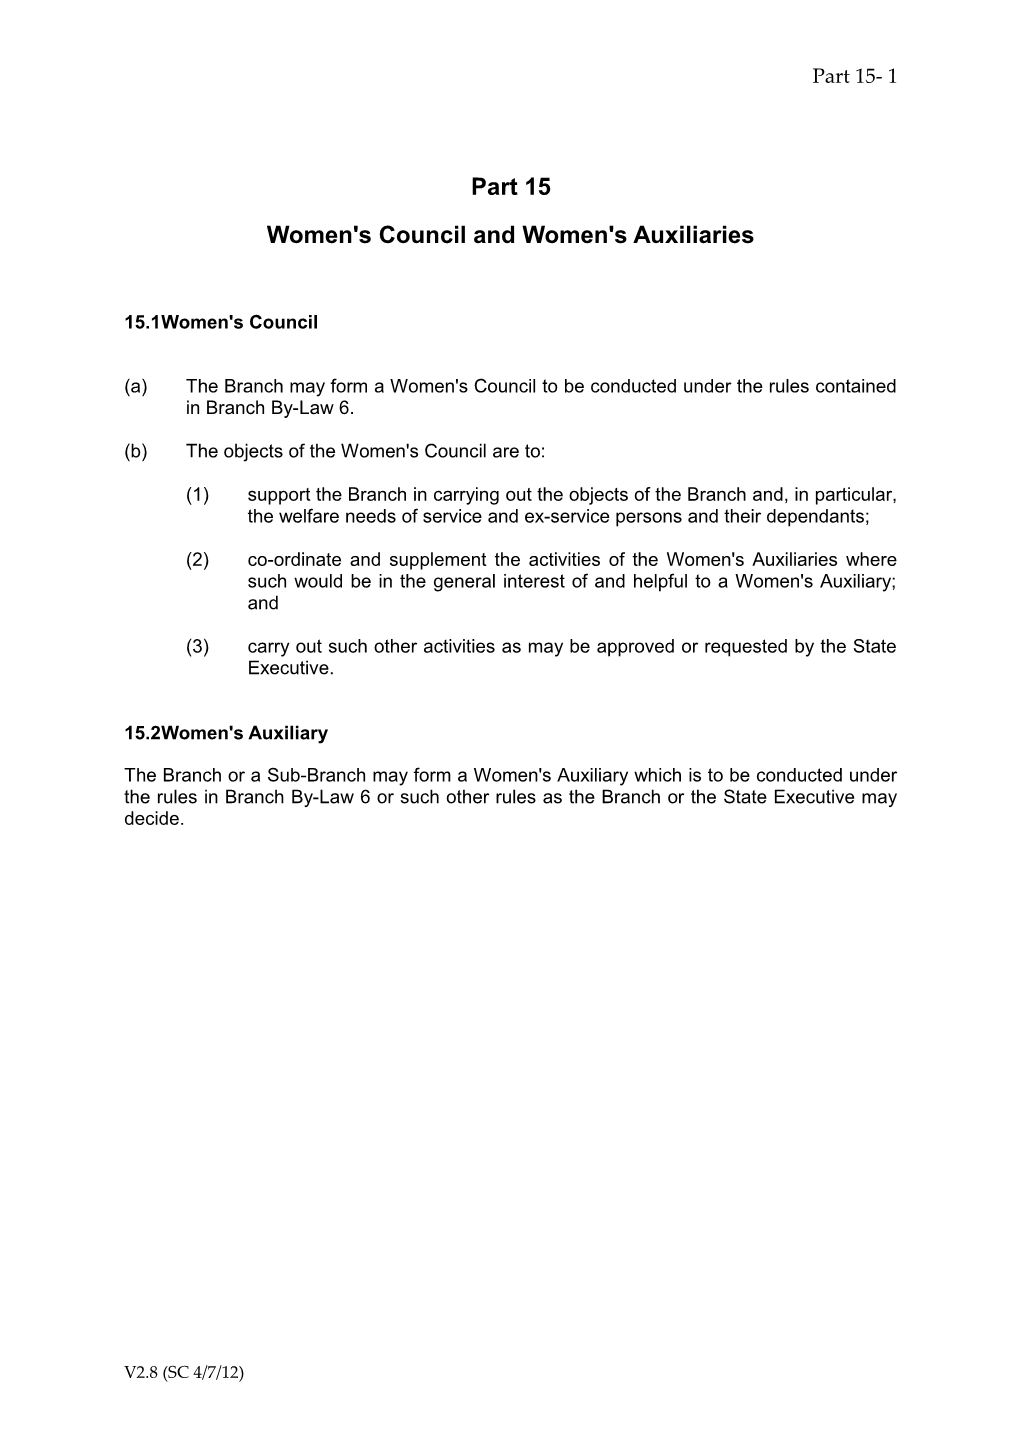 Part 15-Women's Council & Auxiliaries